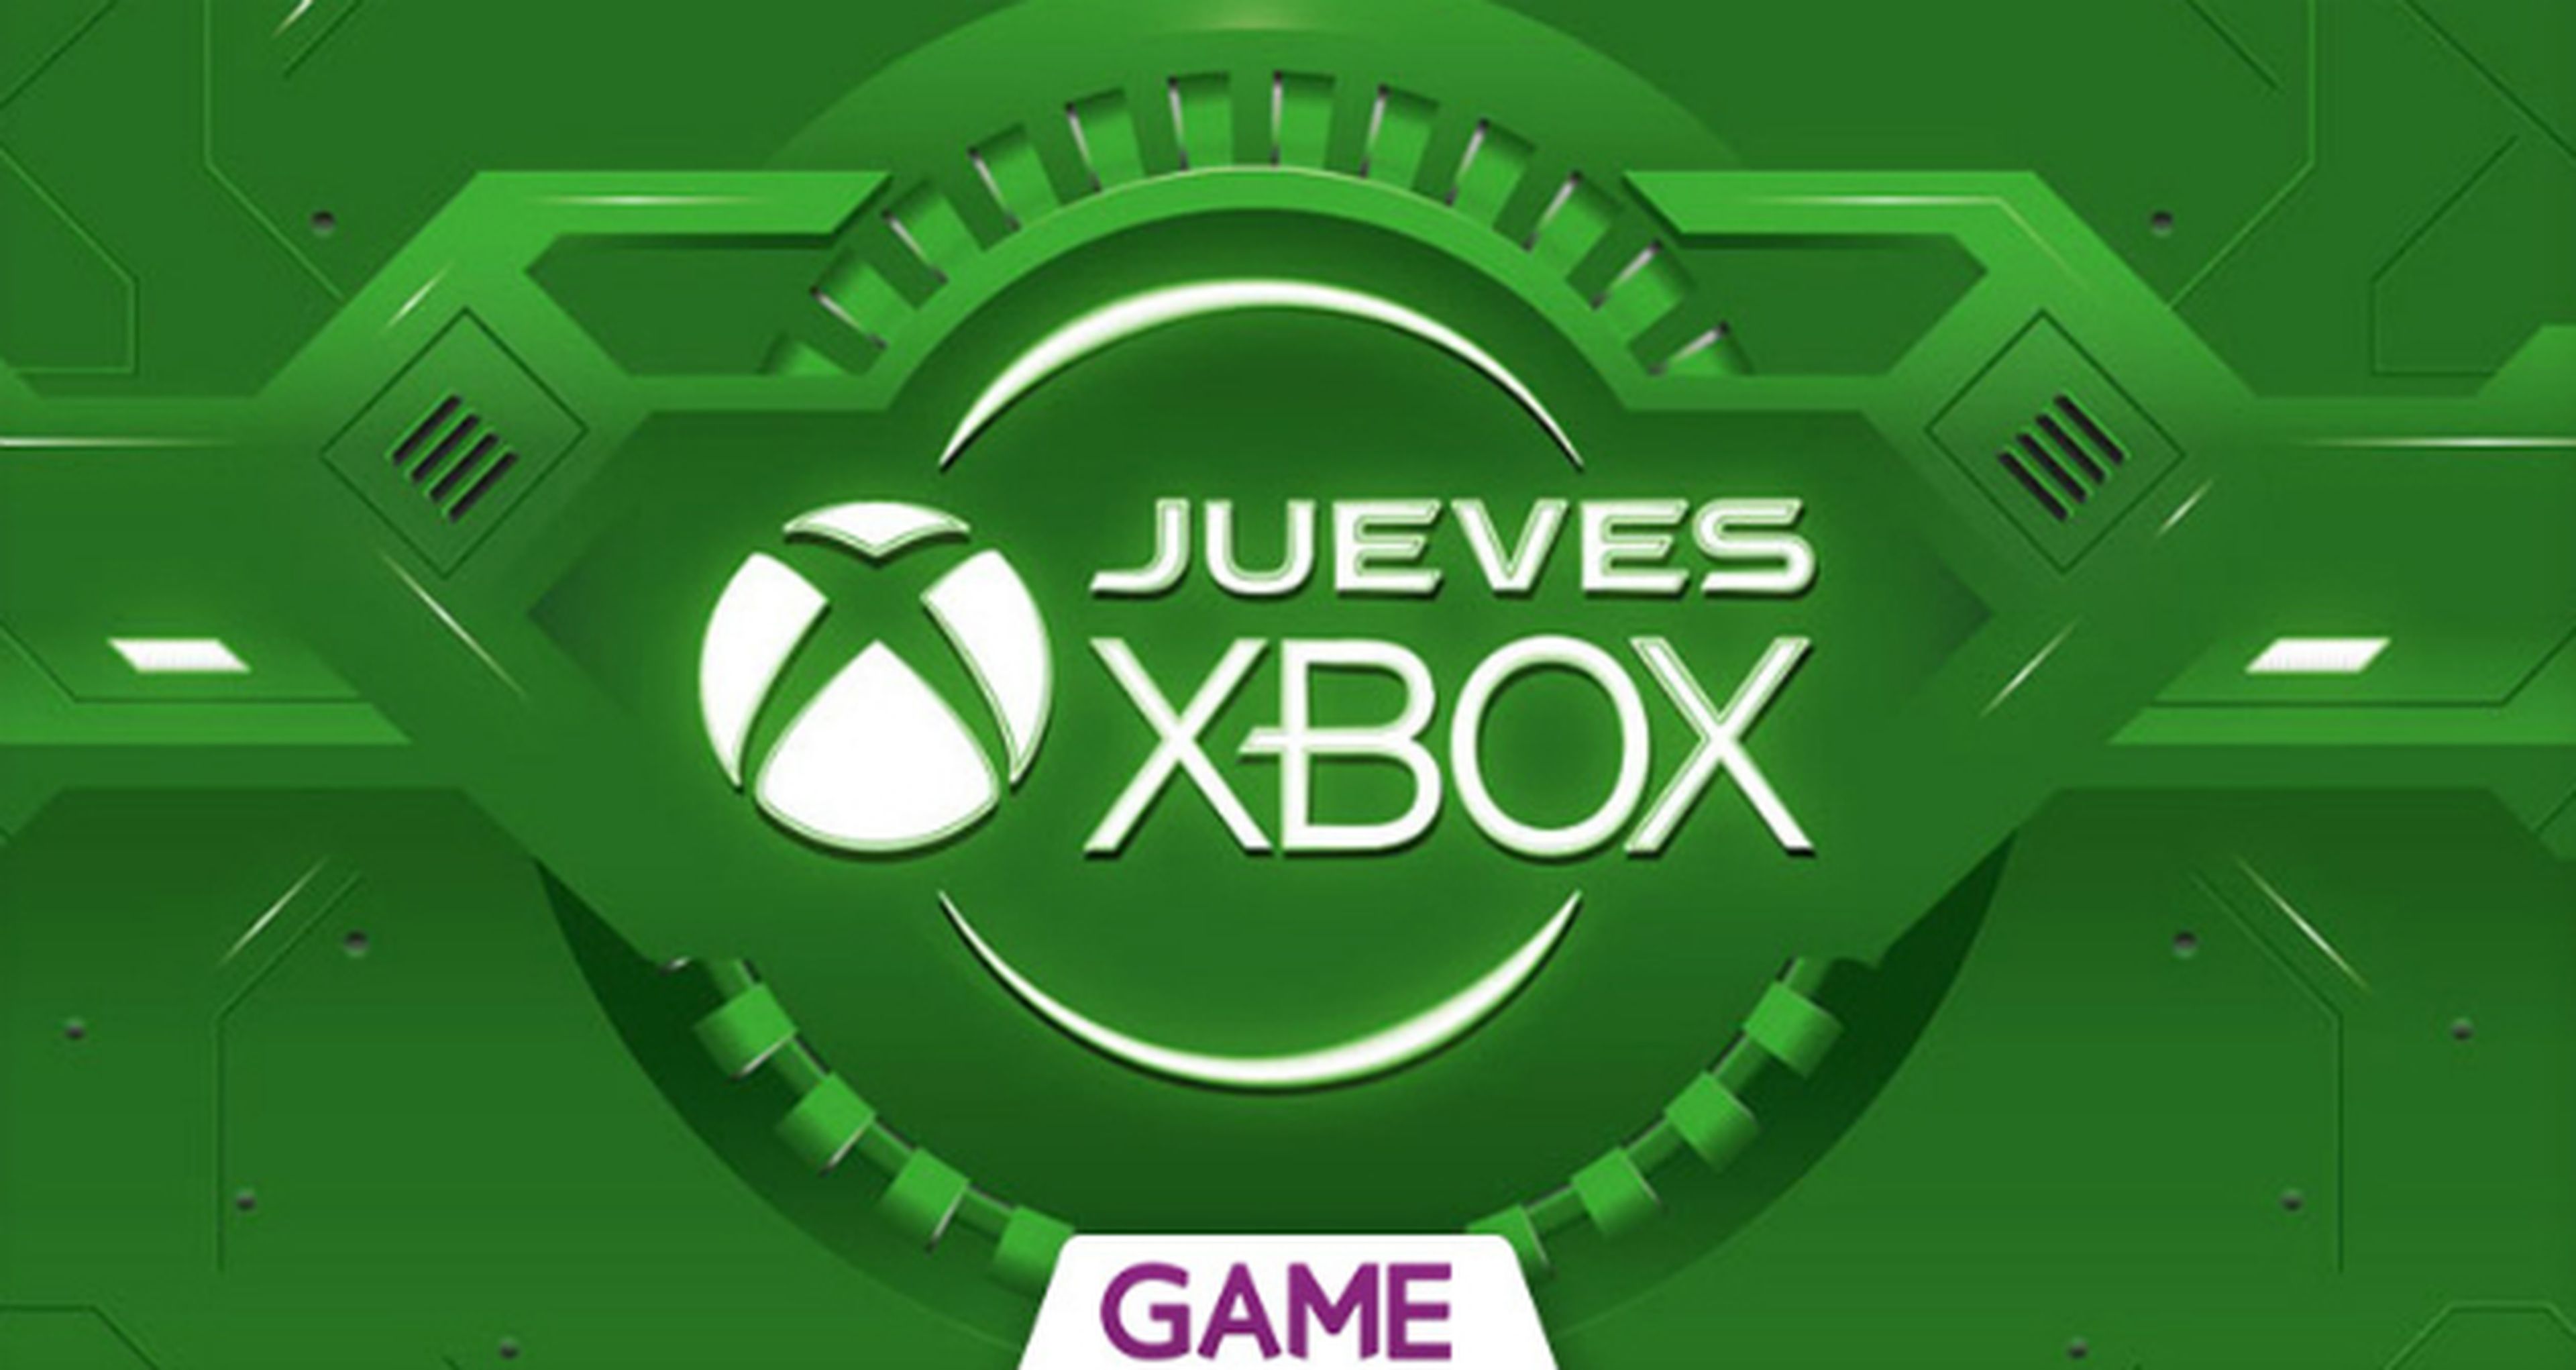 Jueves Xbox en GAME: Ofertas 17/12/2015